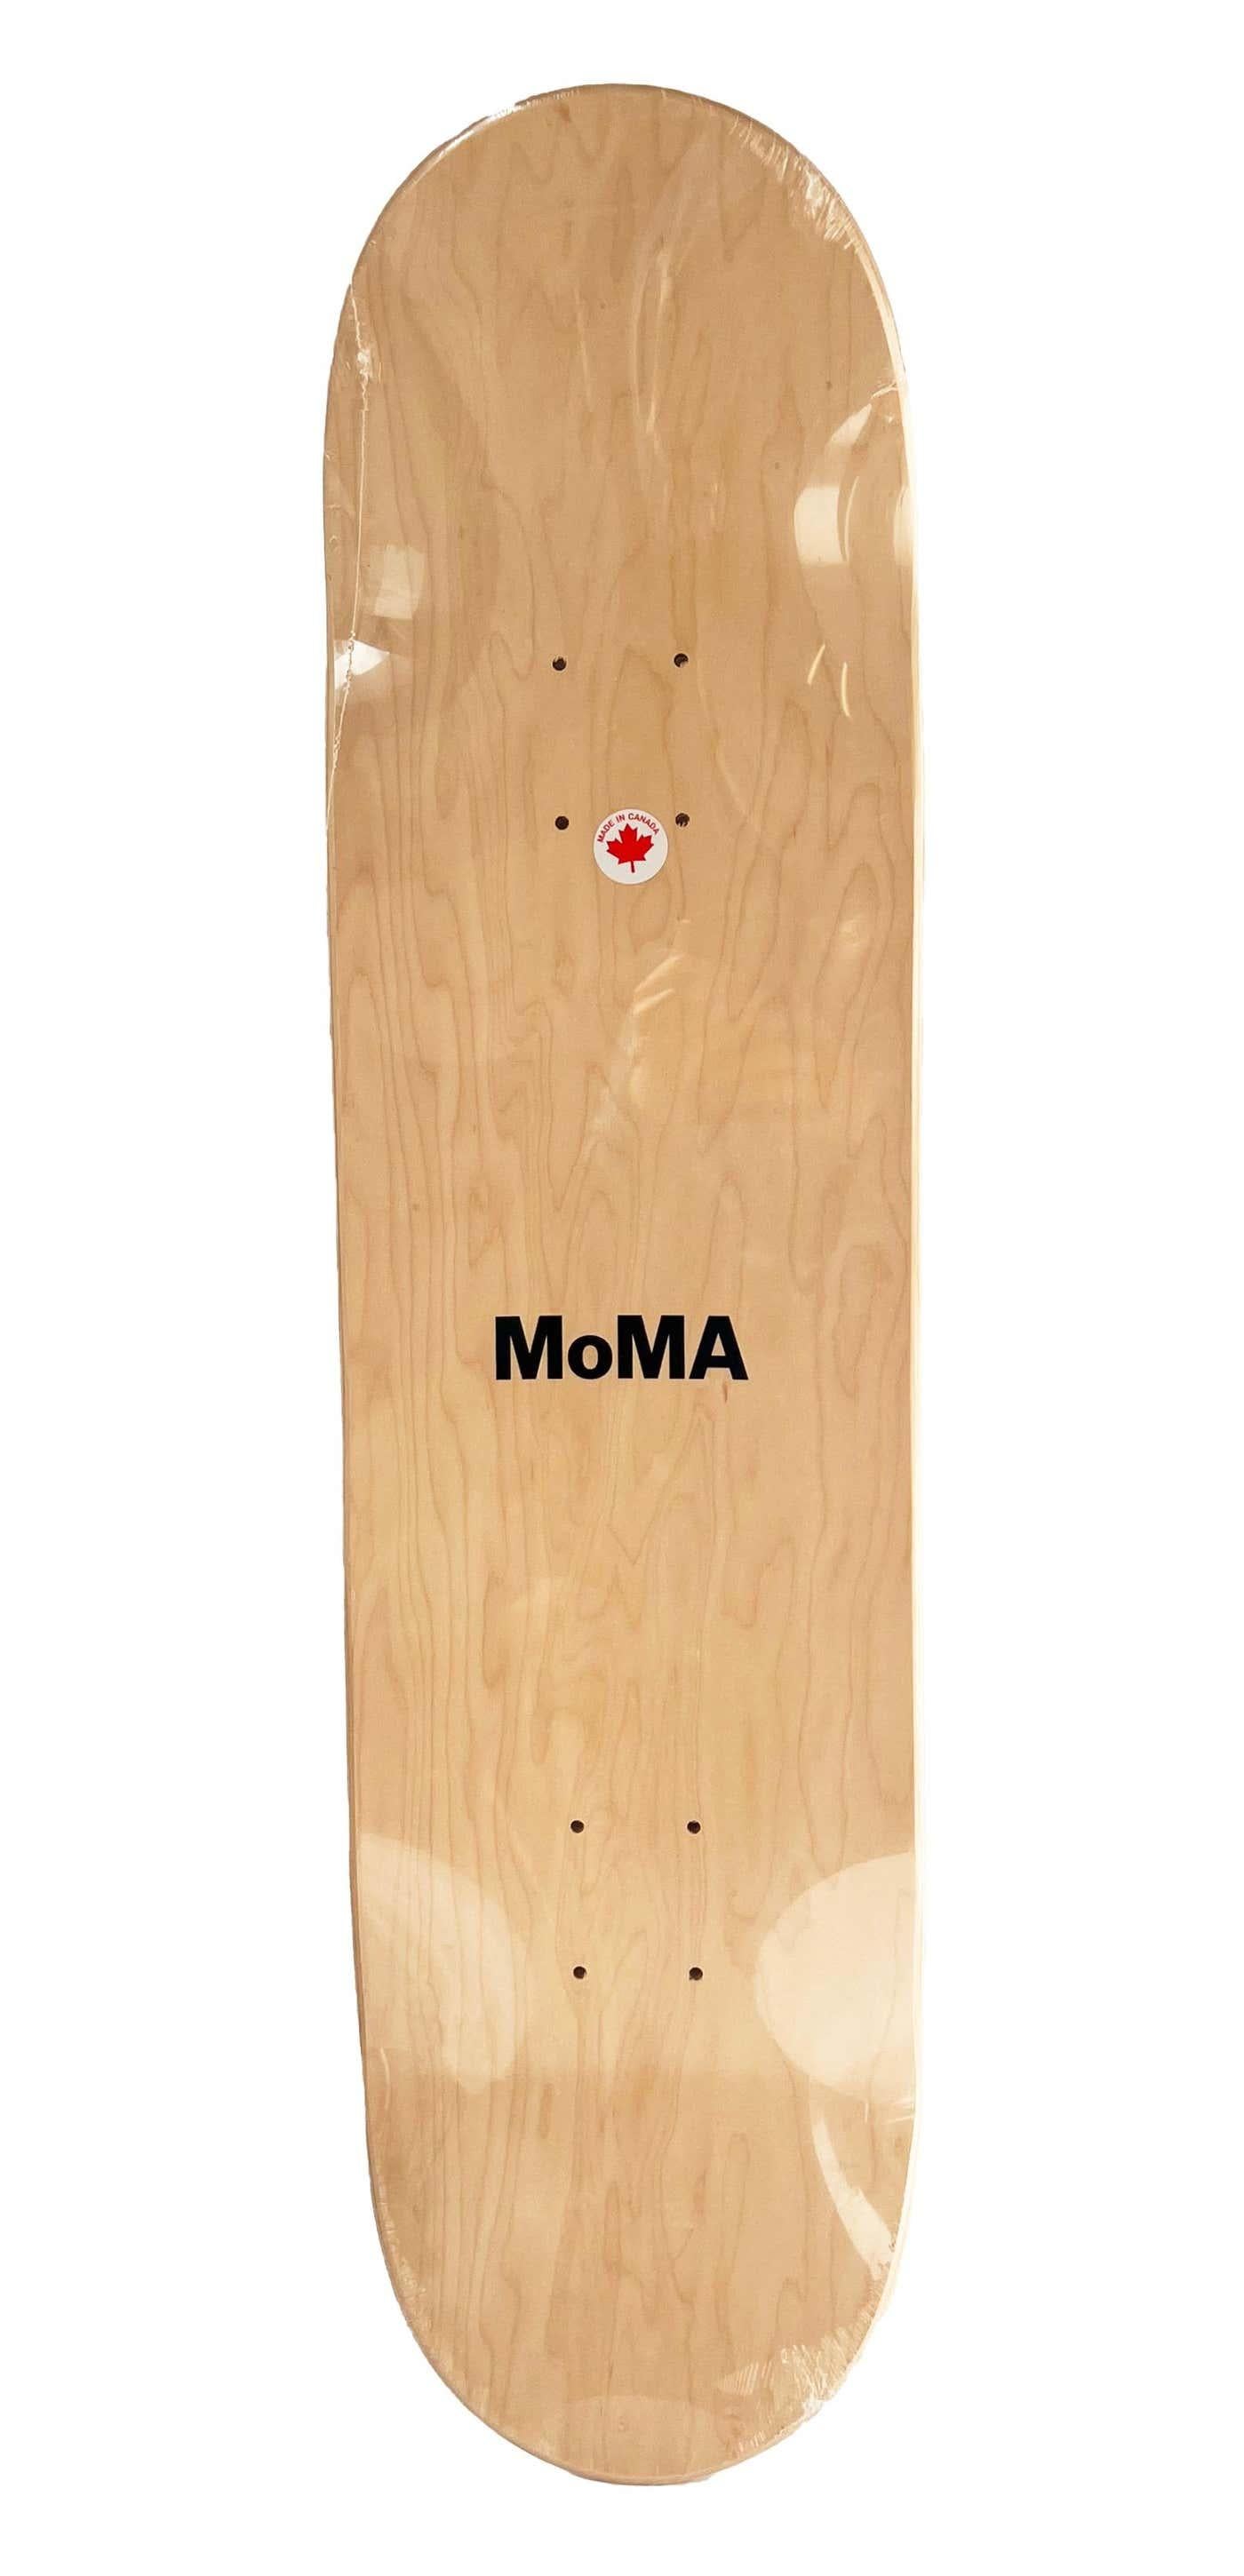 yoshitomo nara skateboard moma